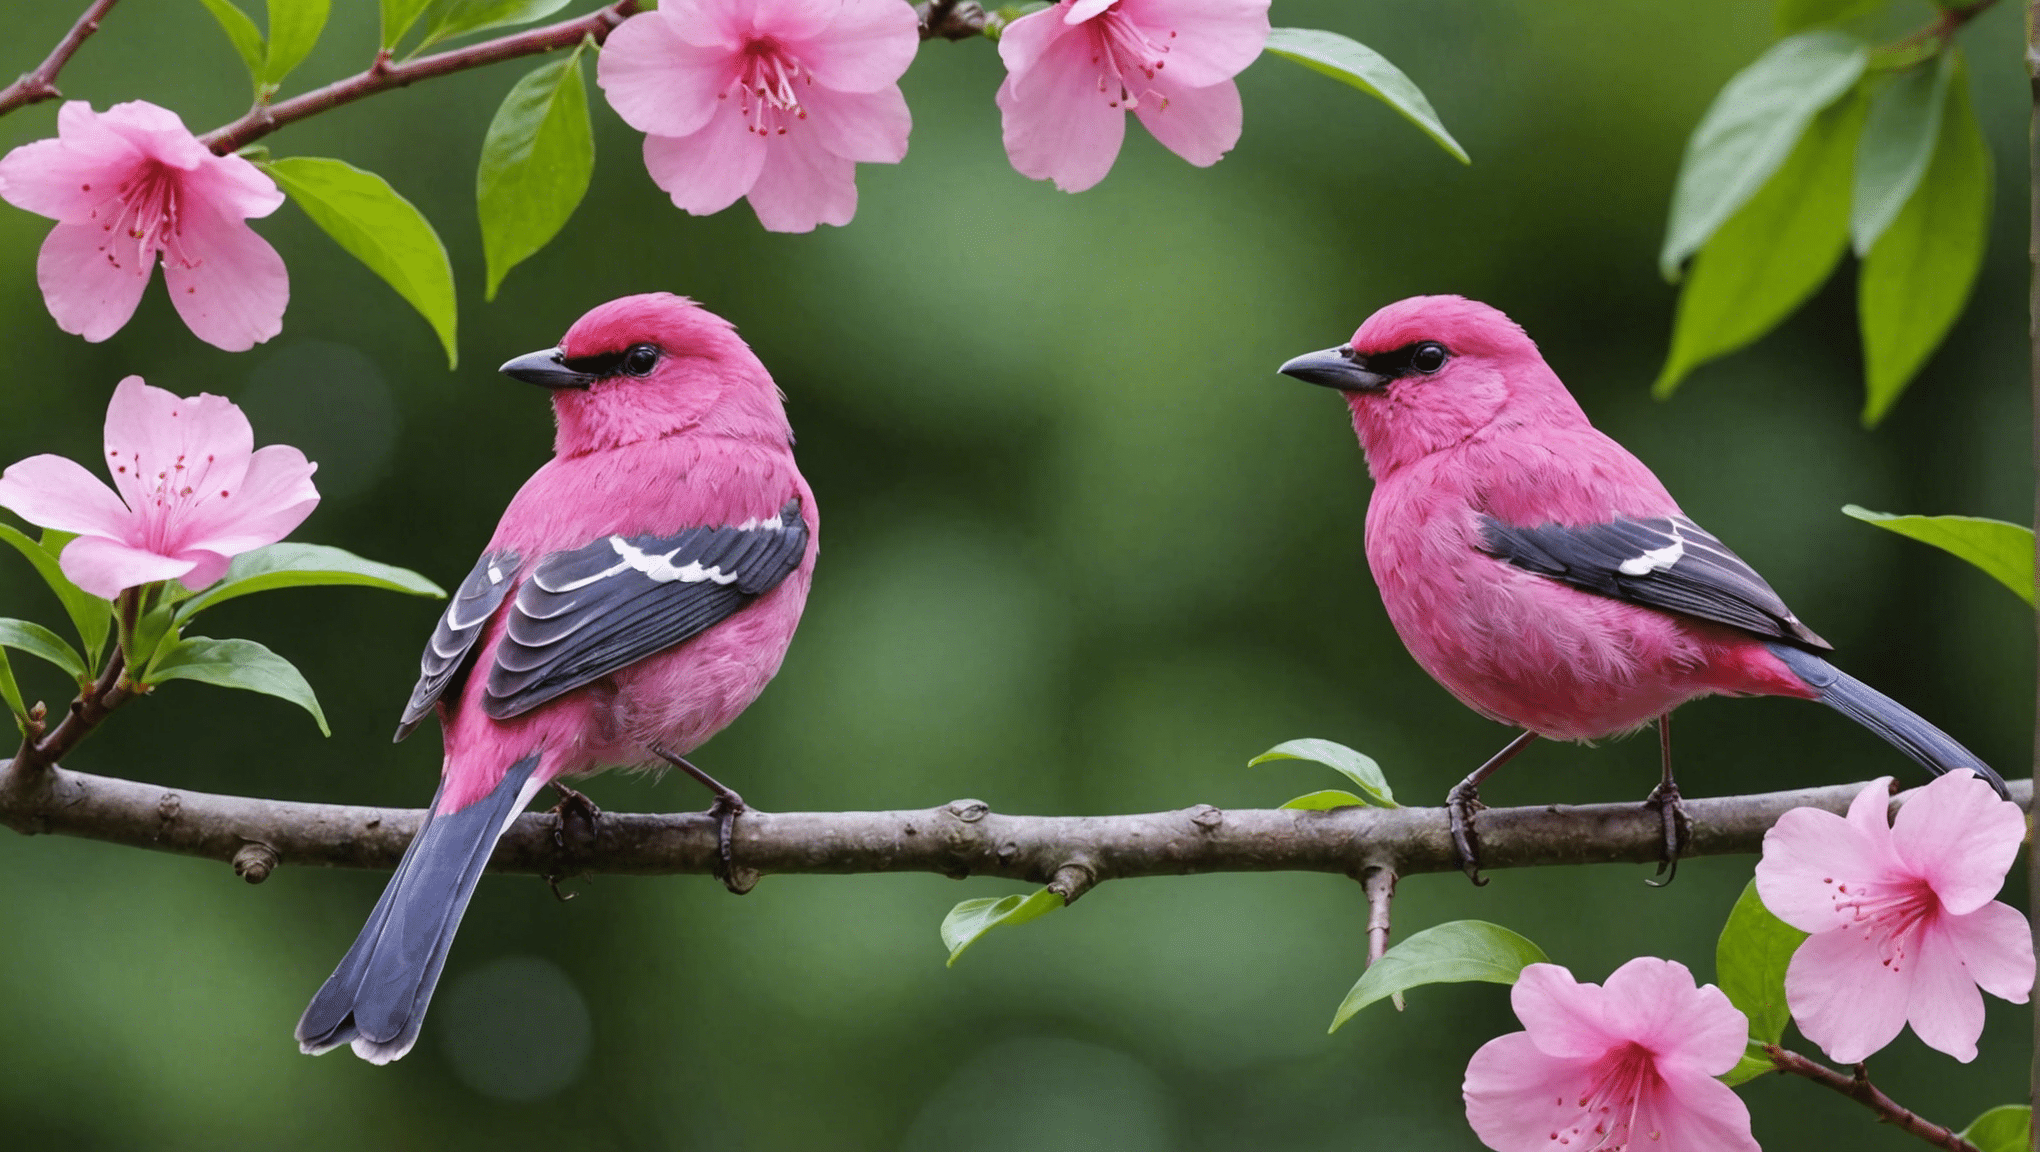 Zistite, či sú ružové vtáky skutočné, pomocou tejto zaujímavej diskusie o existencii ružových vtákov, ich vlastnostiach a ich význame v prírodnom svete.